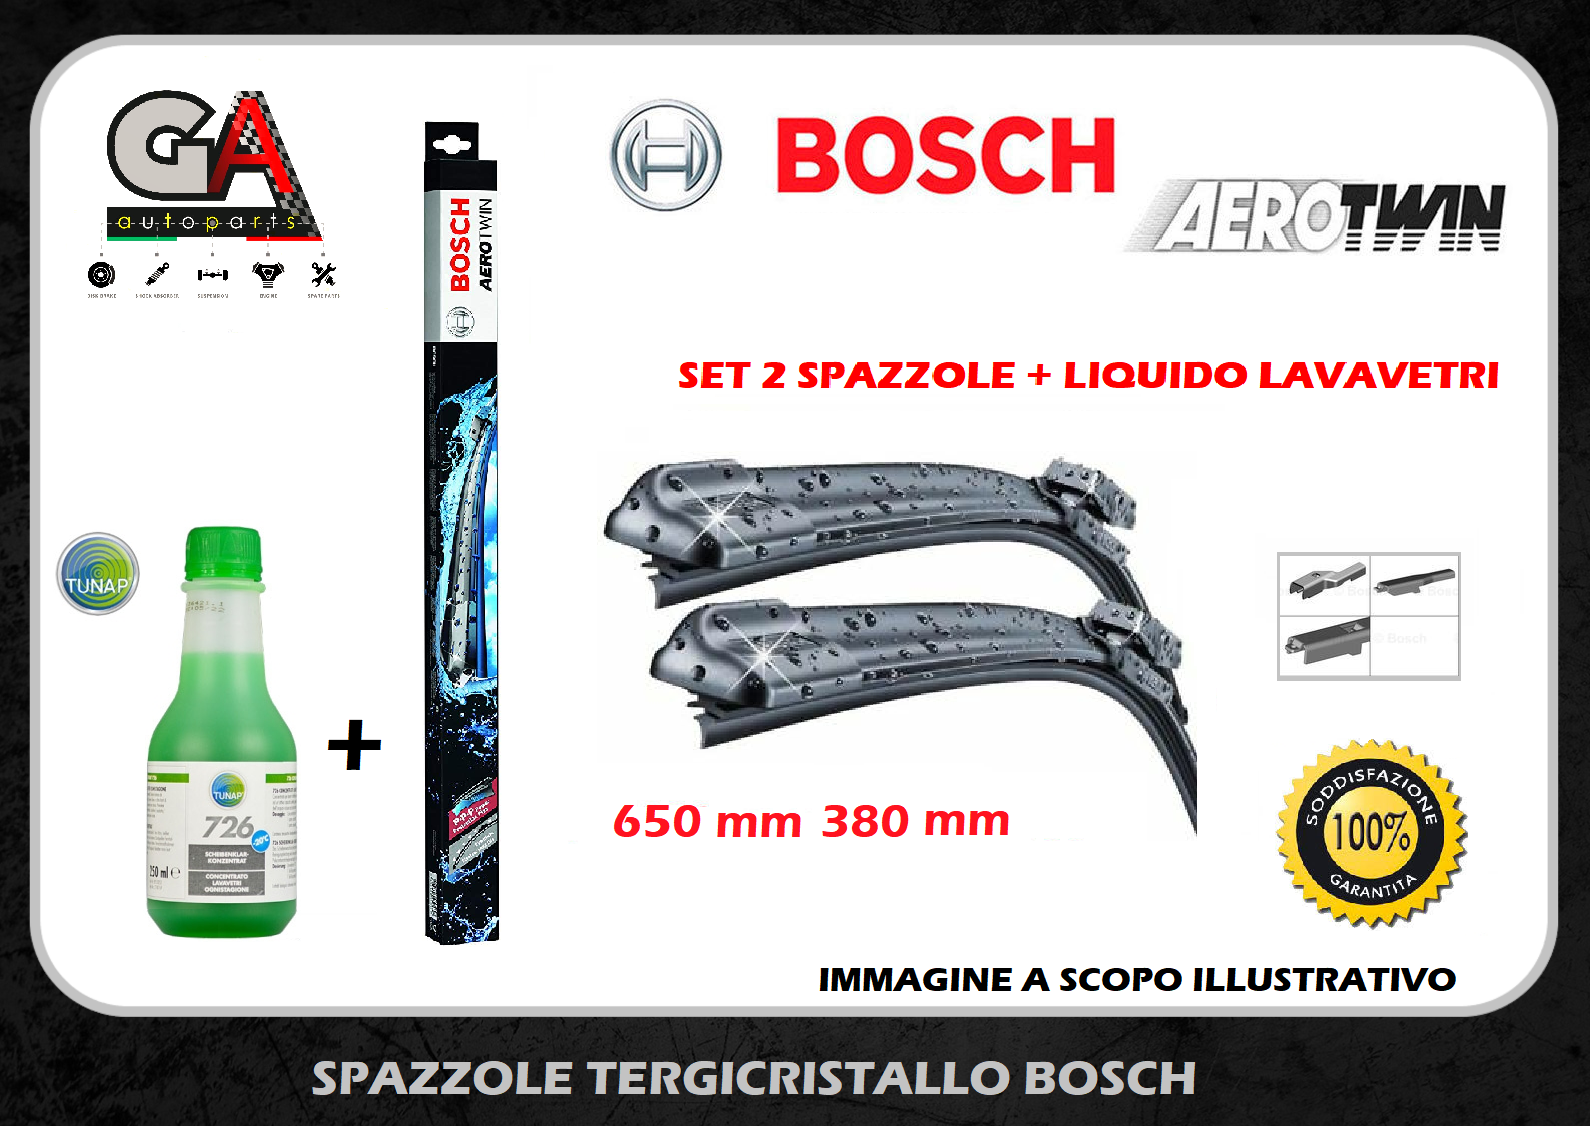 Tergicristalli BOSCH aerotwin FIAT 500L ALFA Mito set 2 spazzole +